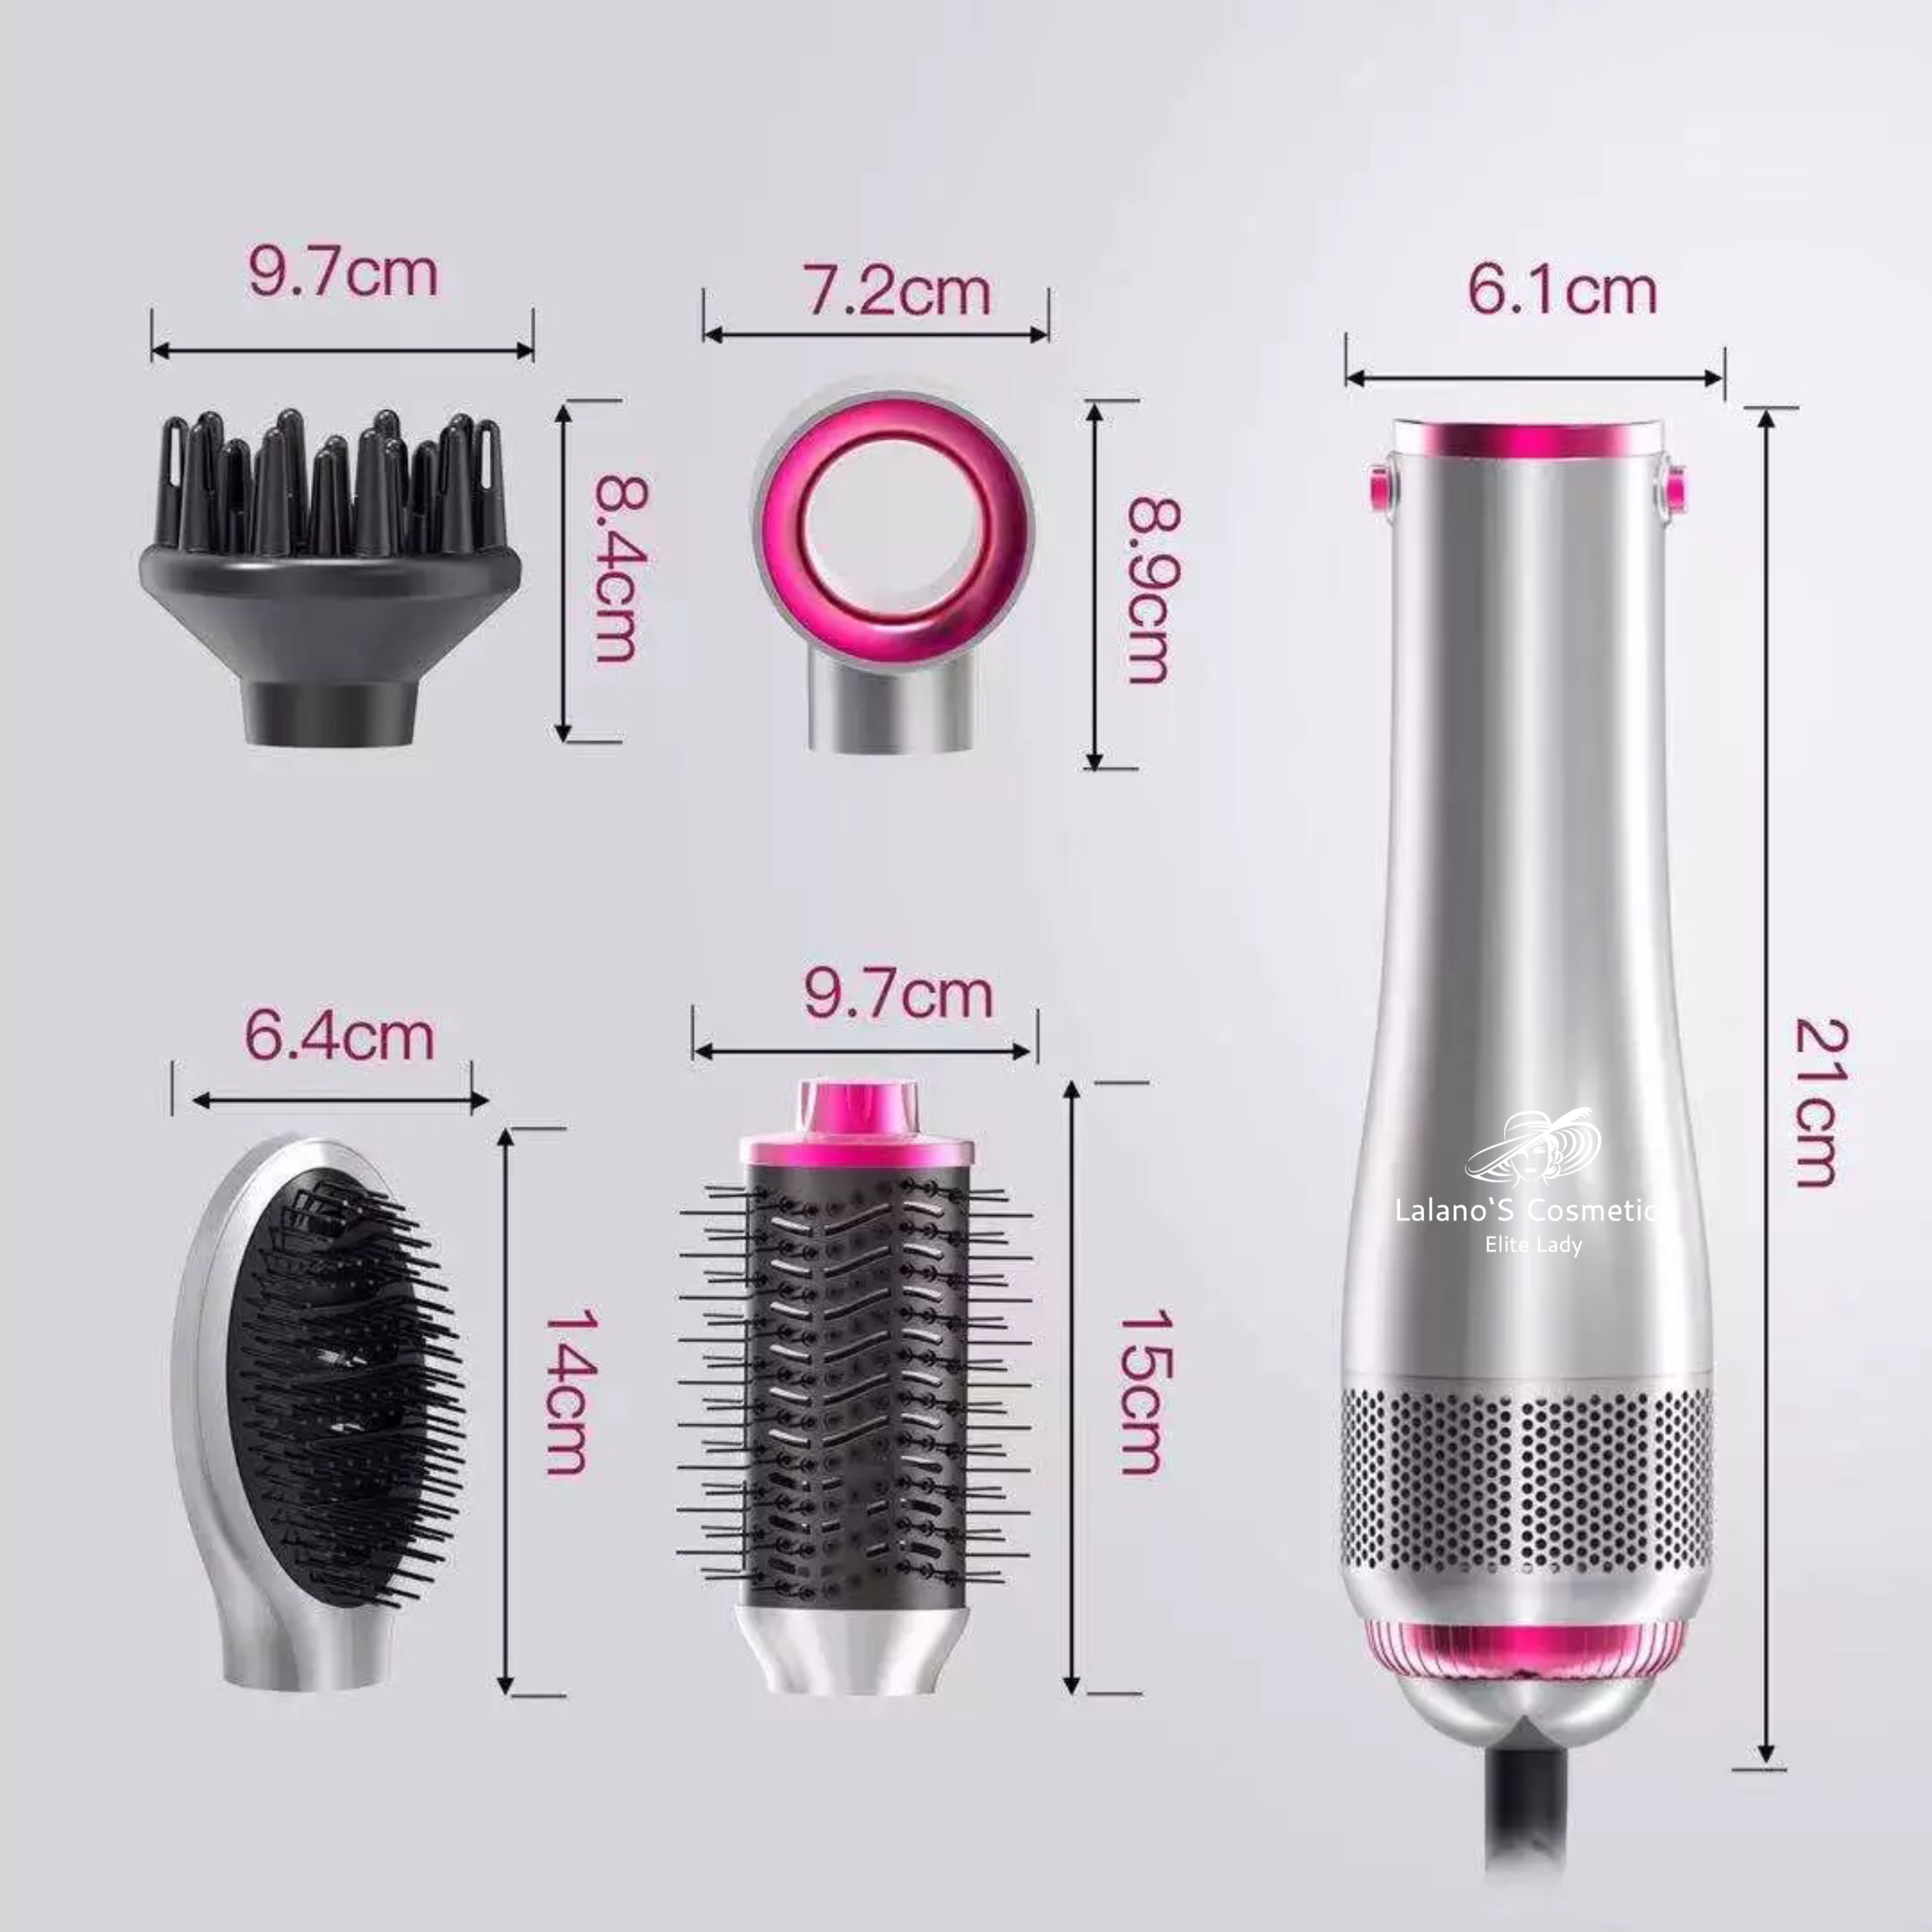 LALANOS COSMETICS One Step Volumizer 1200,00 W One Hairstylist, in Grau/Pink 4 Hair Dryer (1200 Warmluftbürste Step 1 Haartrockner Volumizer Watt)